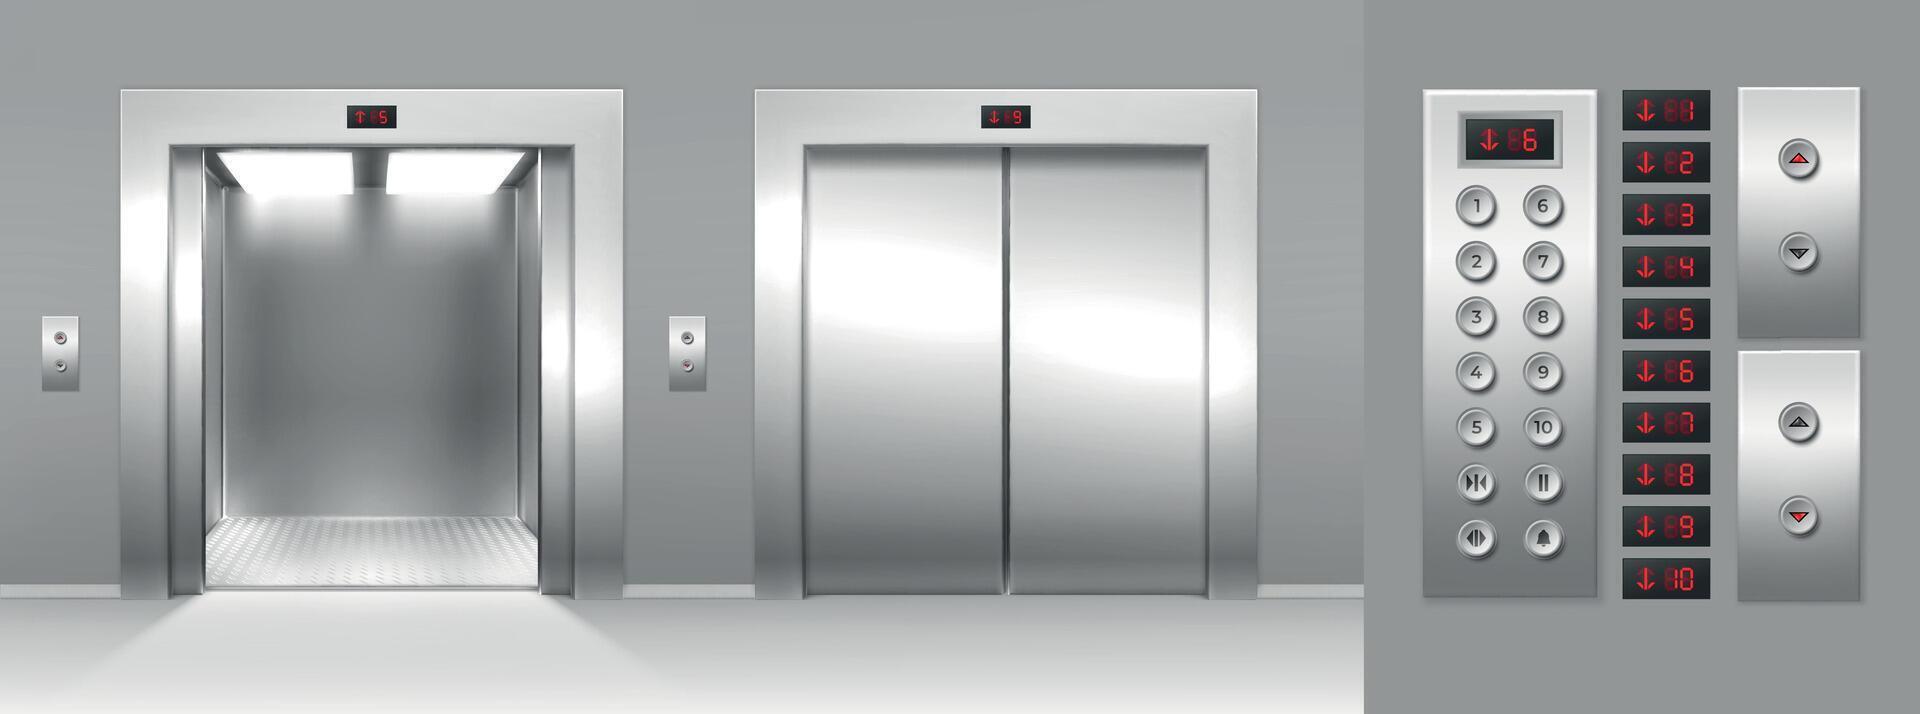 realistisk öppen och stänga hiss, knappar och golv siffra visa. 3d hiss metall grindar och inuti panel. frakt hissar stuga vektor uppsättning